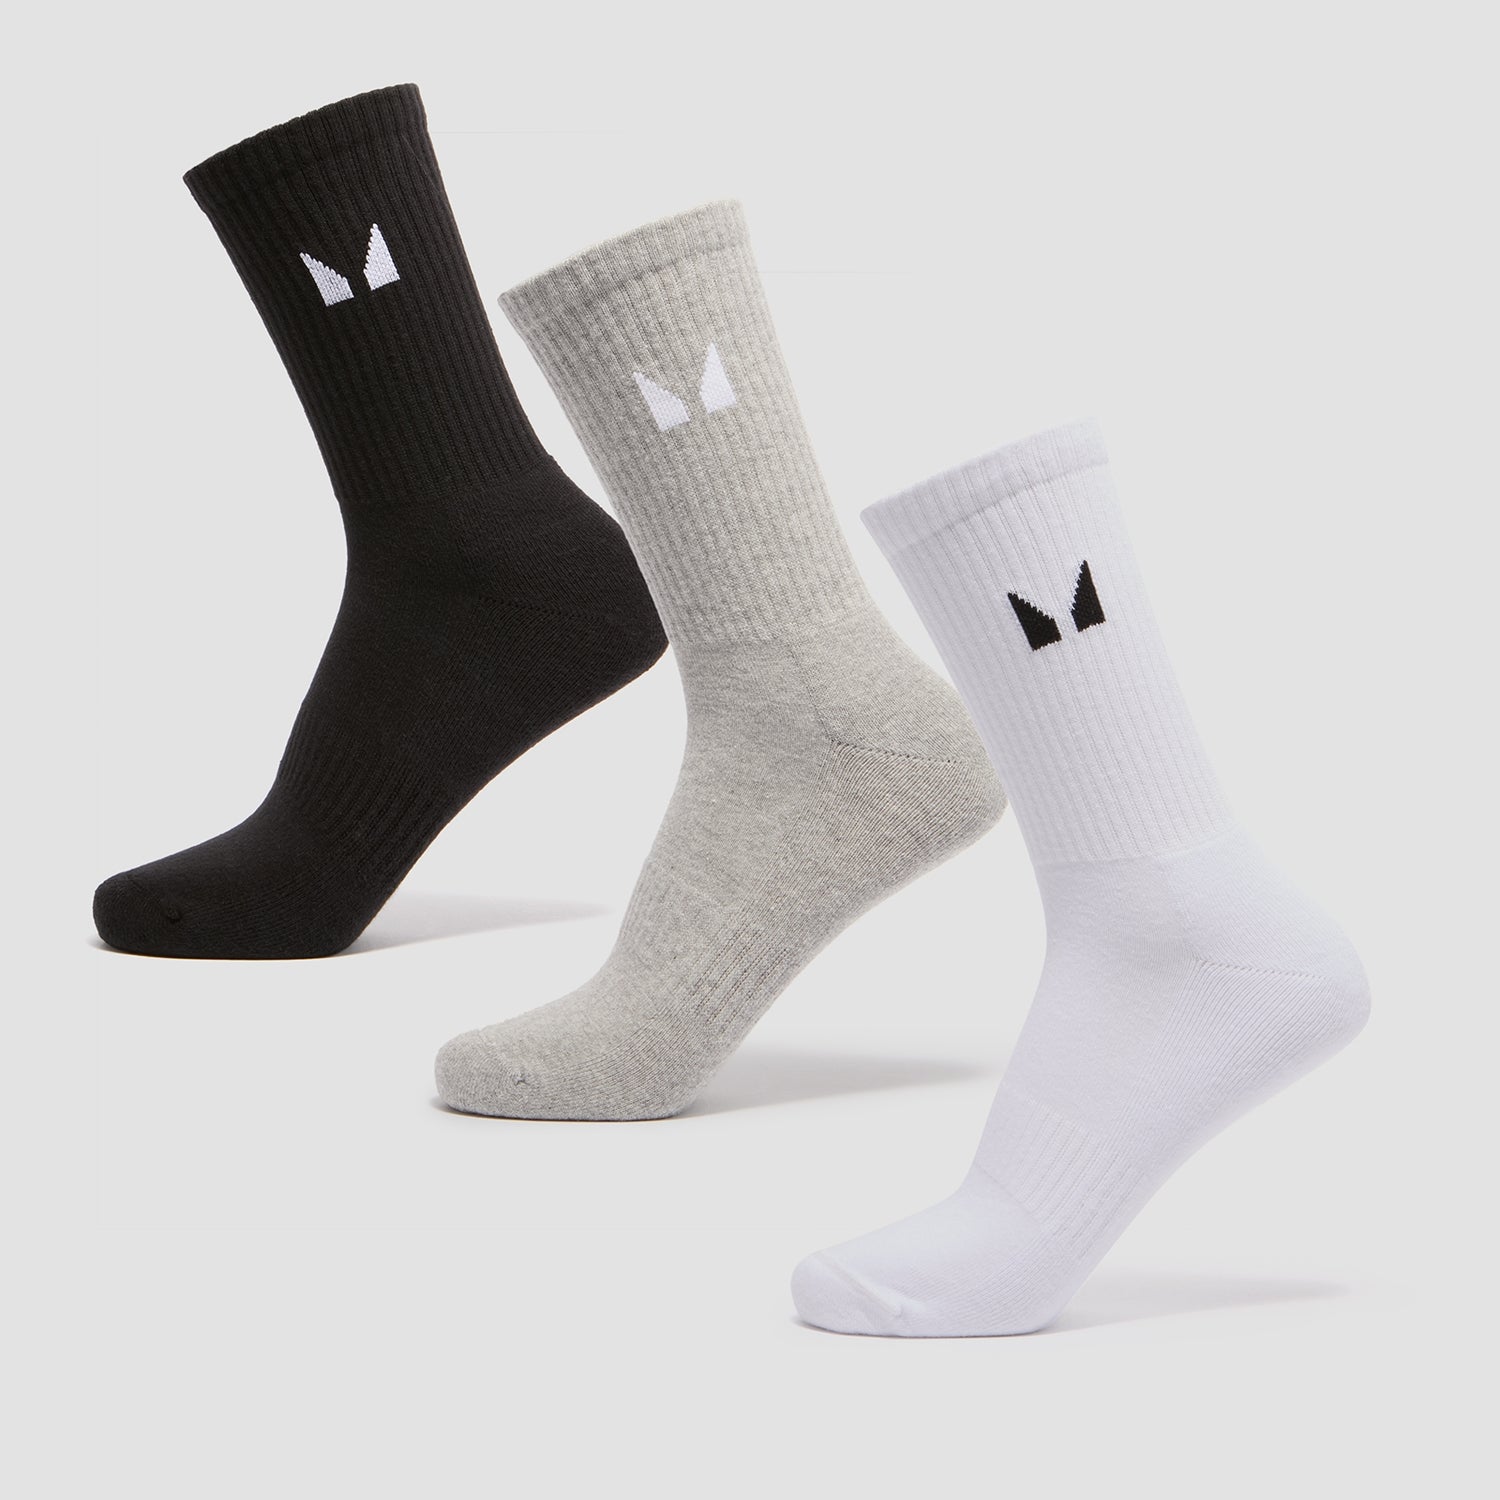 Матросские носки MP (3 пары) — Белые/черные/серый меланж - UK 2-5